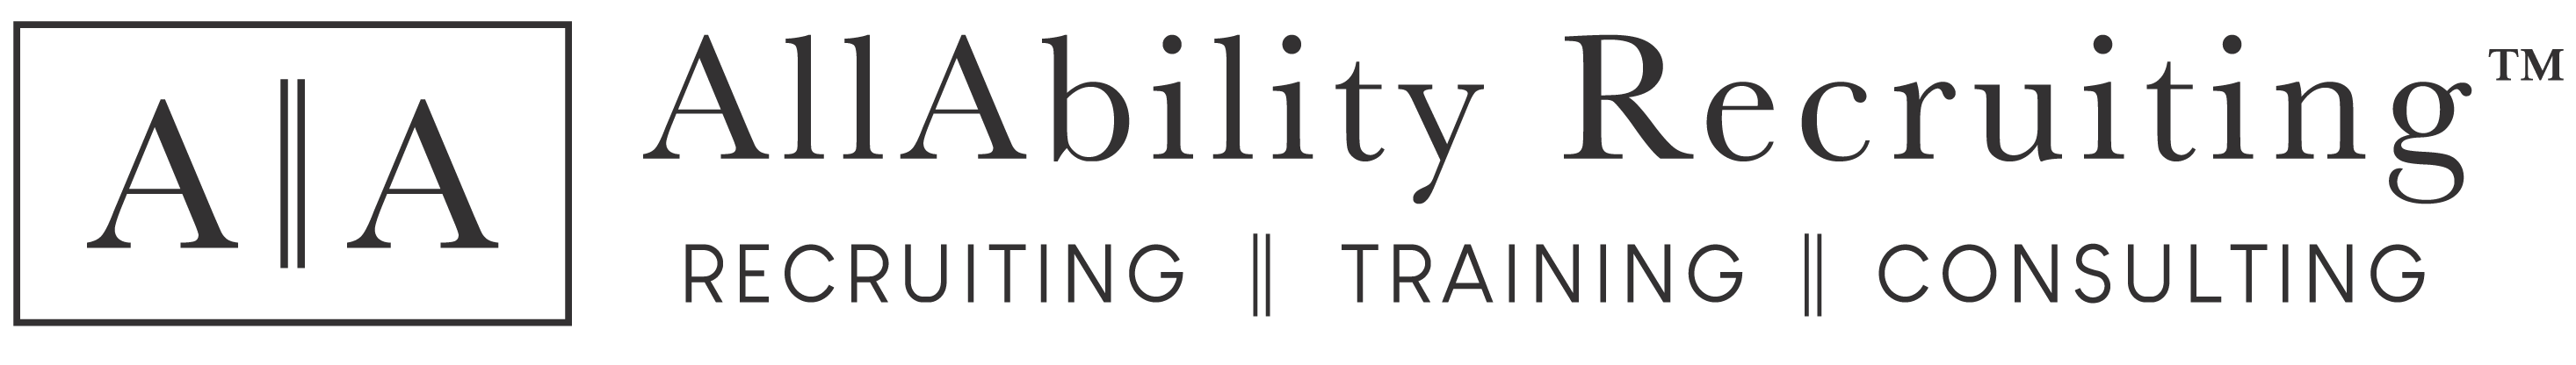 AllAbility Recruiting Logo in black